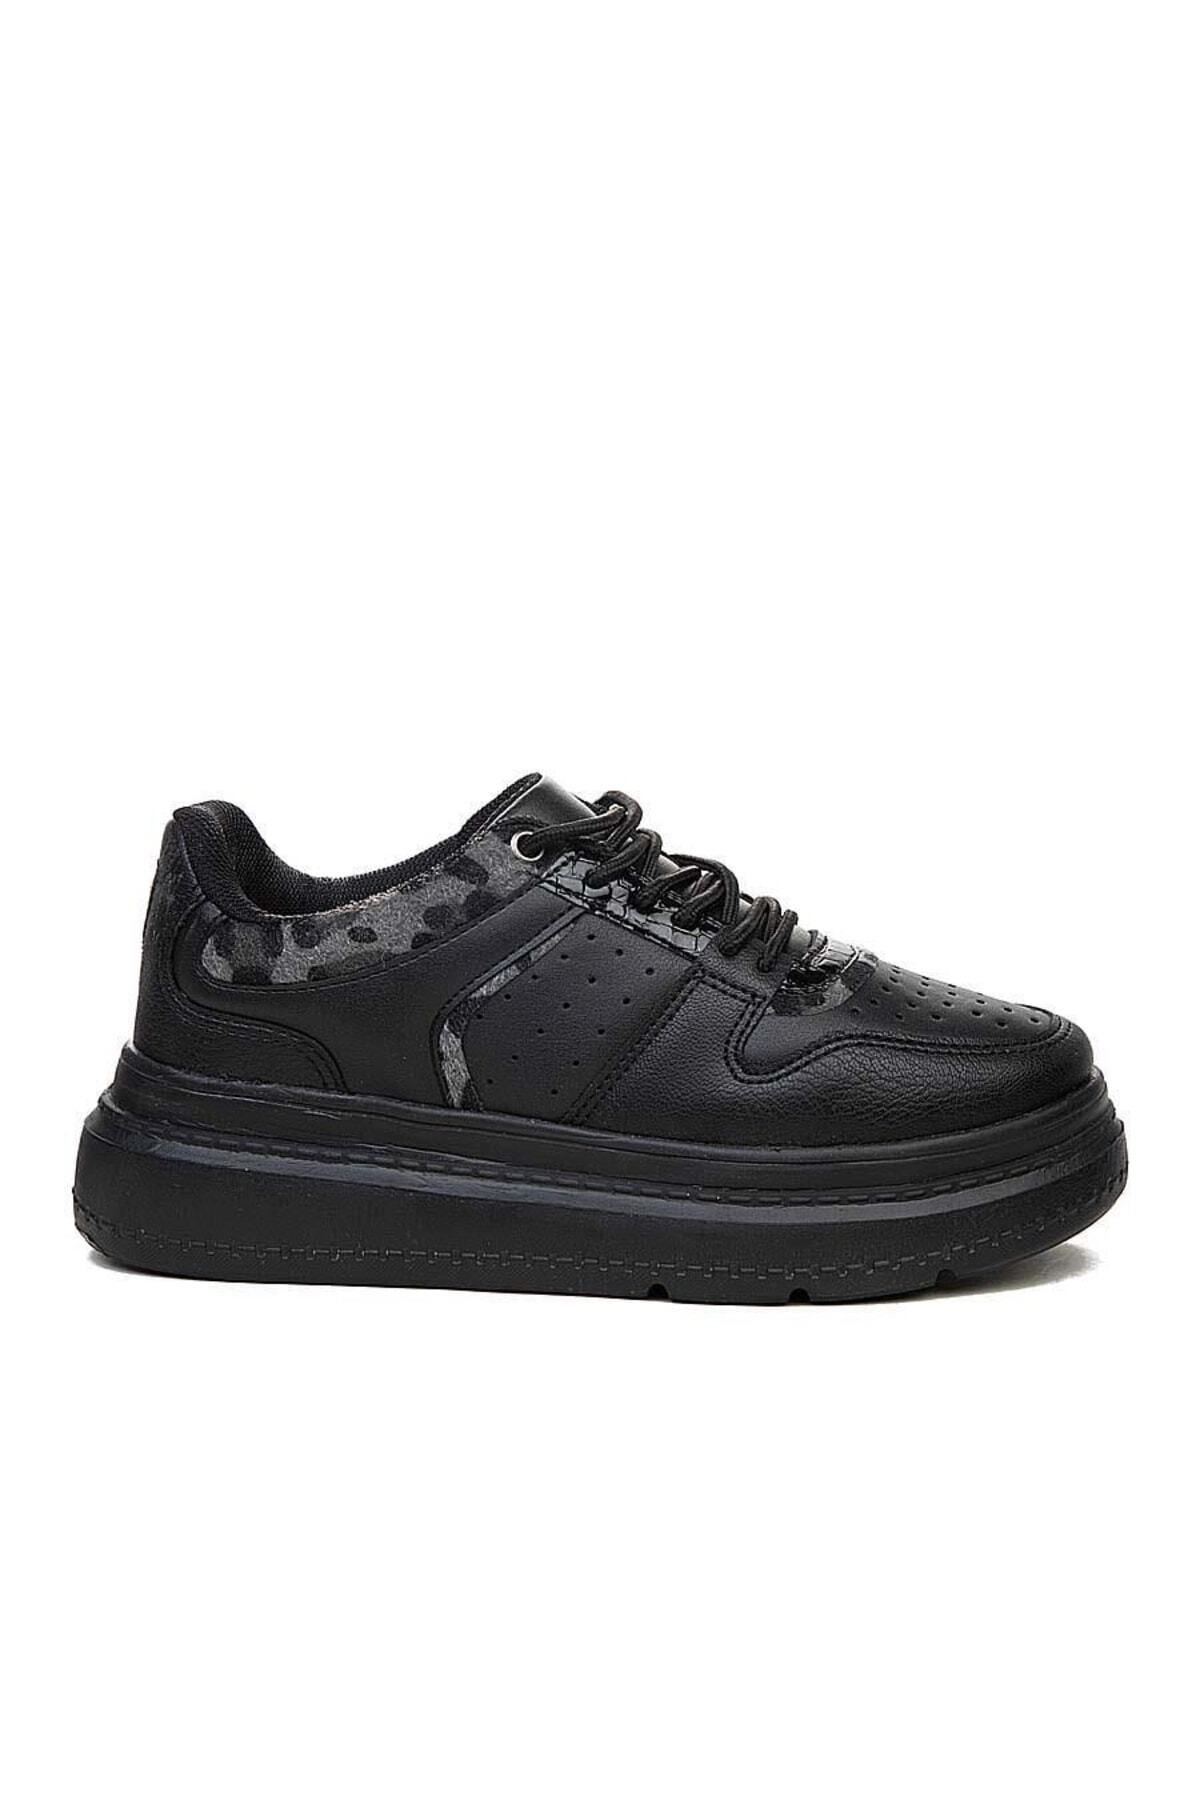 ERENİM Siyah - Flet 173 Kadın Kalın Taban Sneaker Ayakkabı